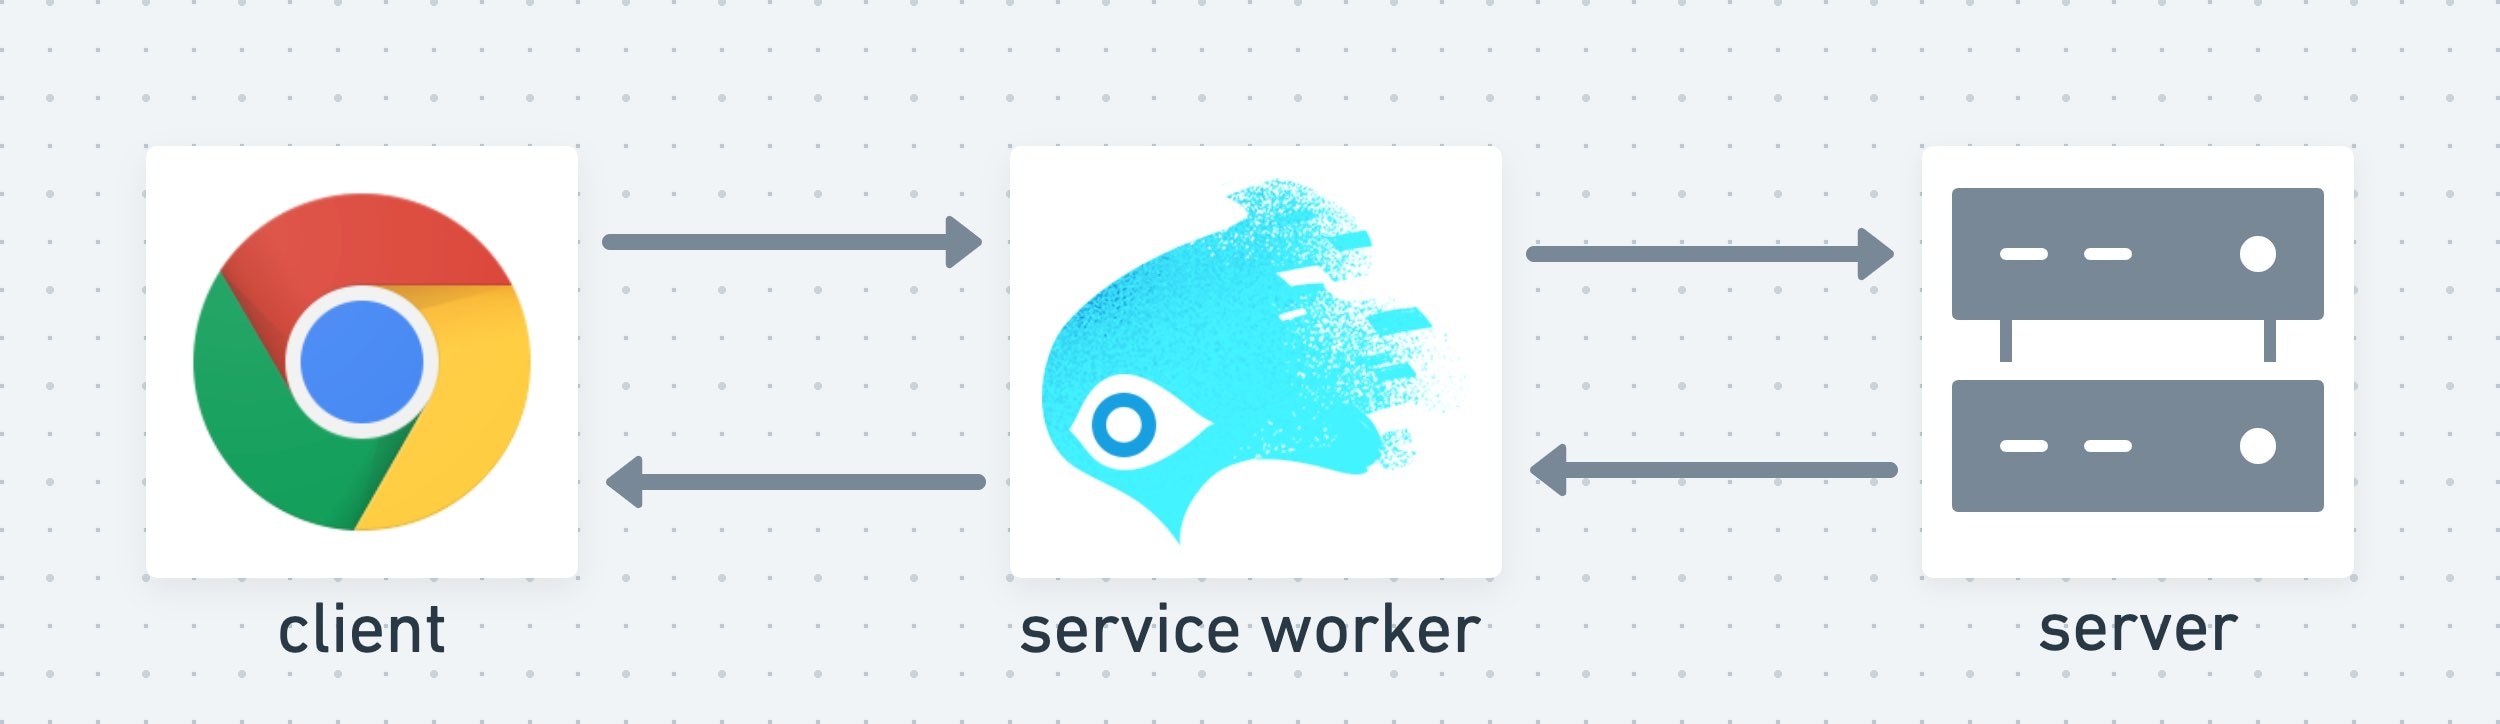 Un service worker joue le rôle de couche intermédiaire entre le client et le serveur